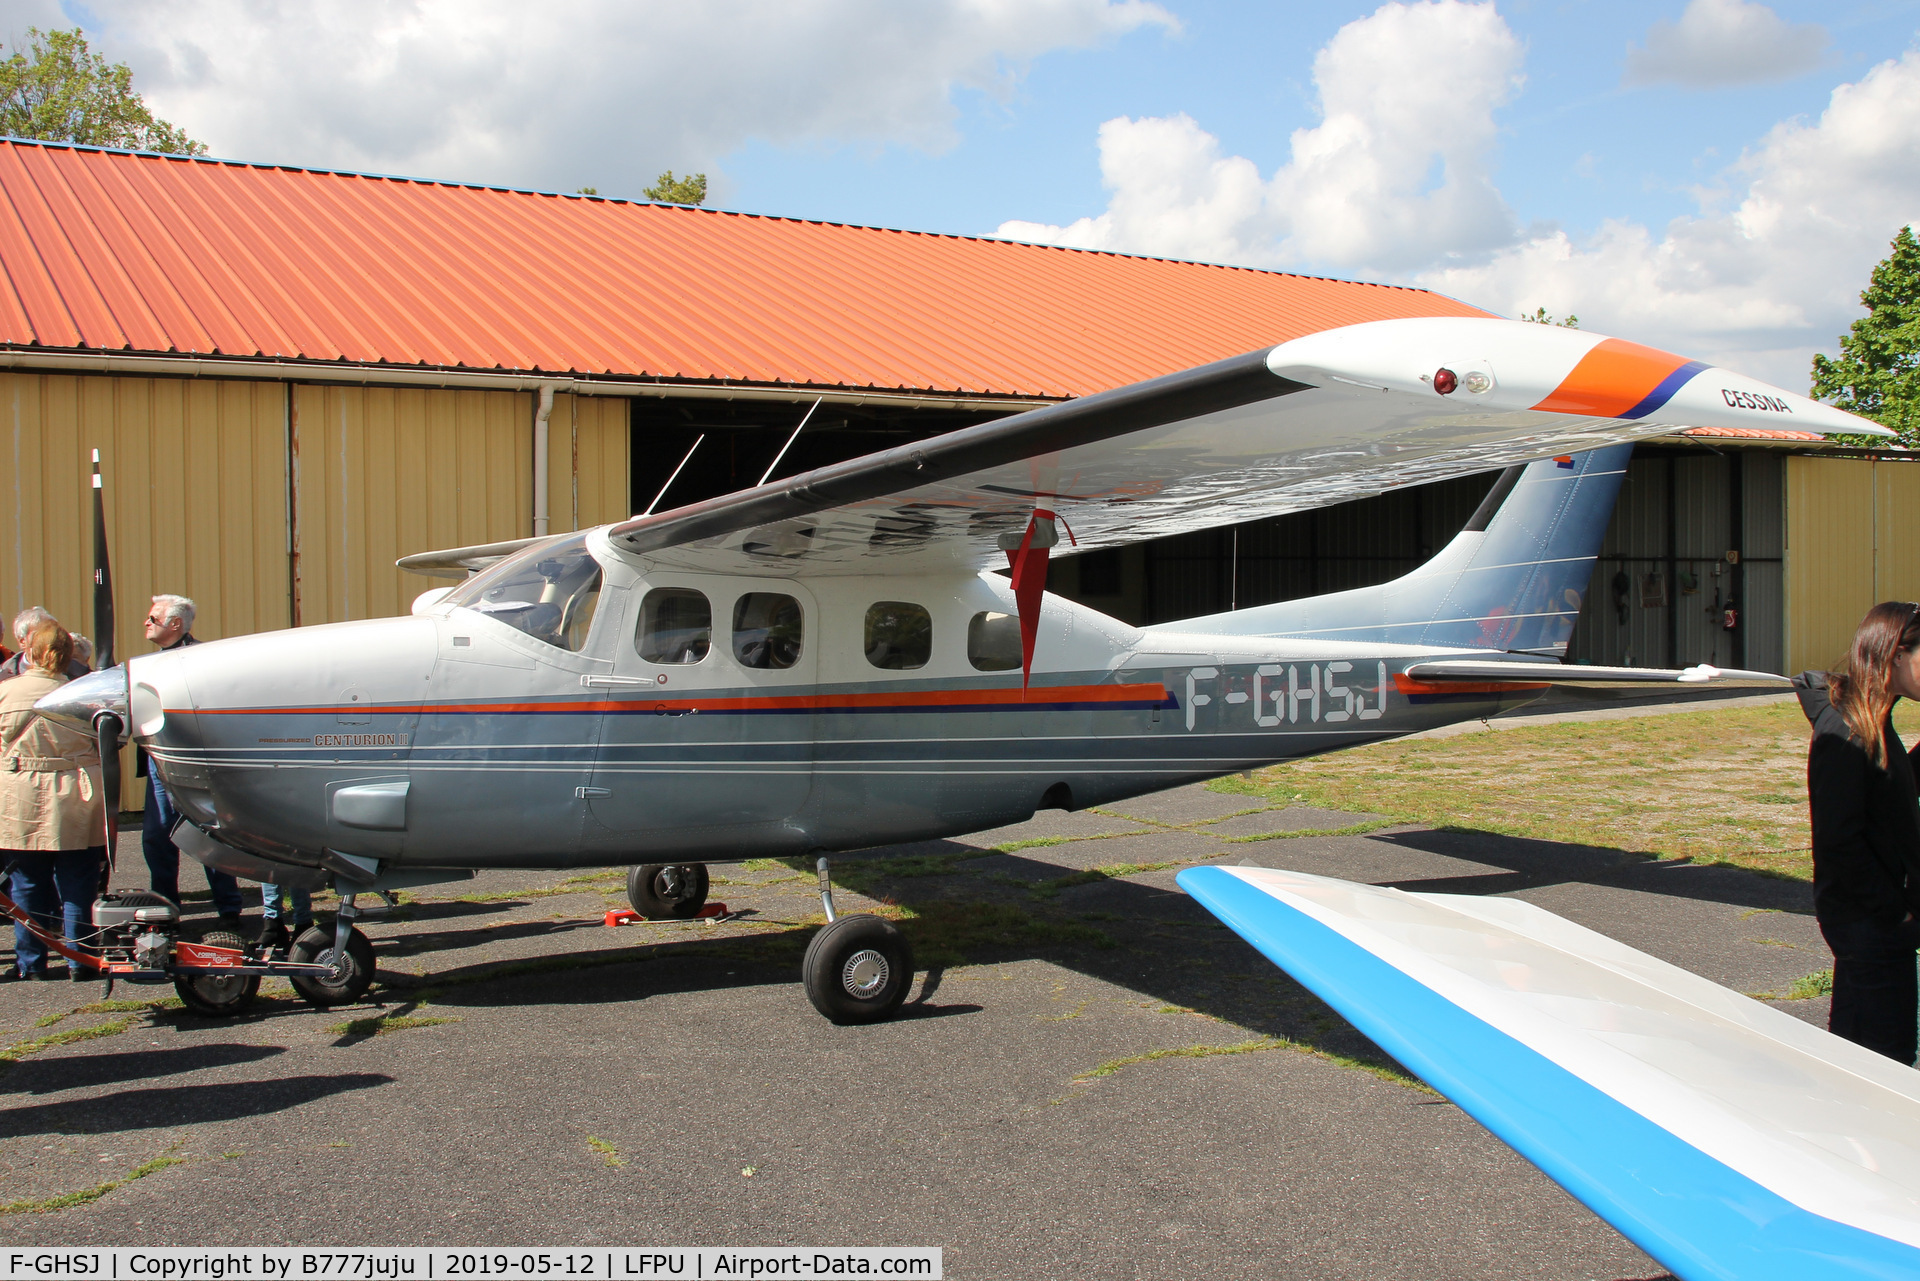 F-GHSJ, 1980 Cessna P210N Pressurised Centurion C/N P21000493, at Moret